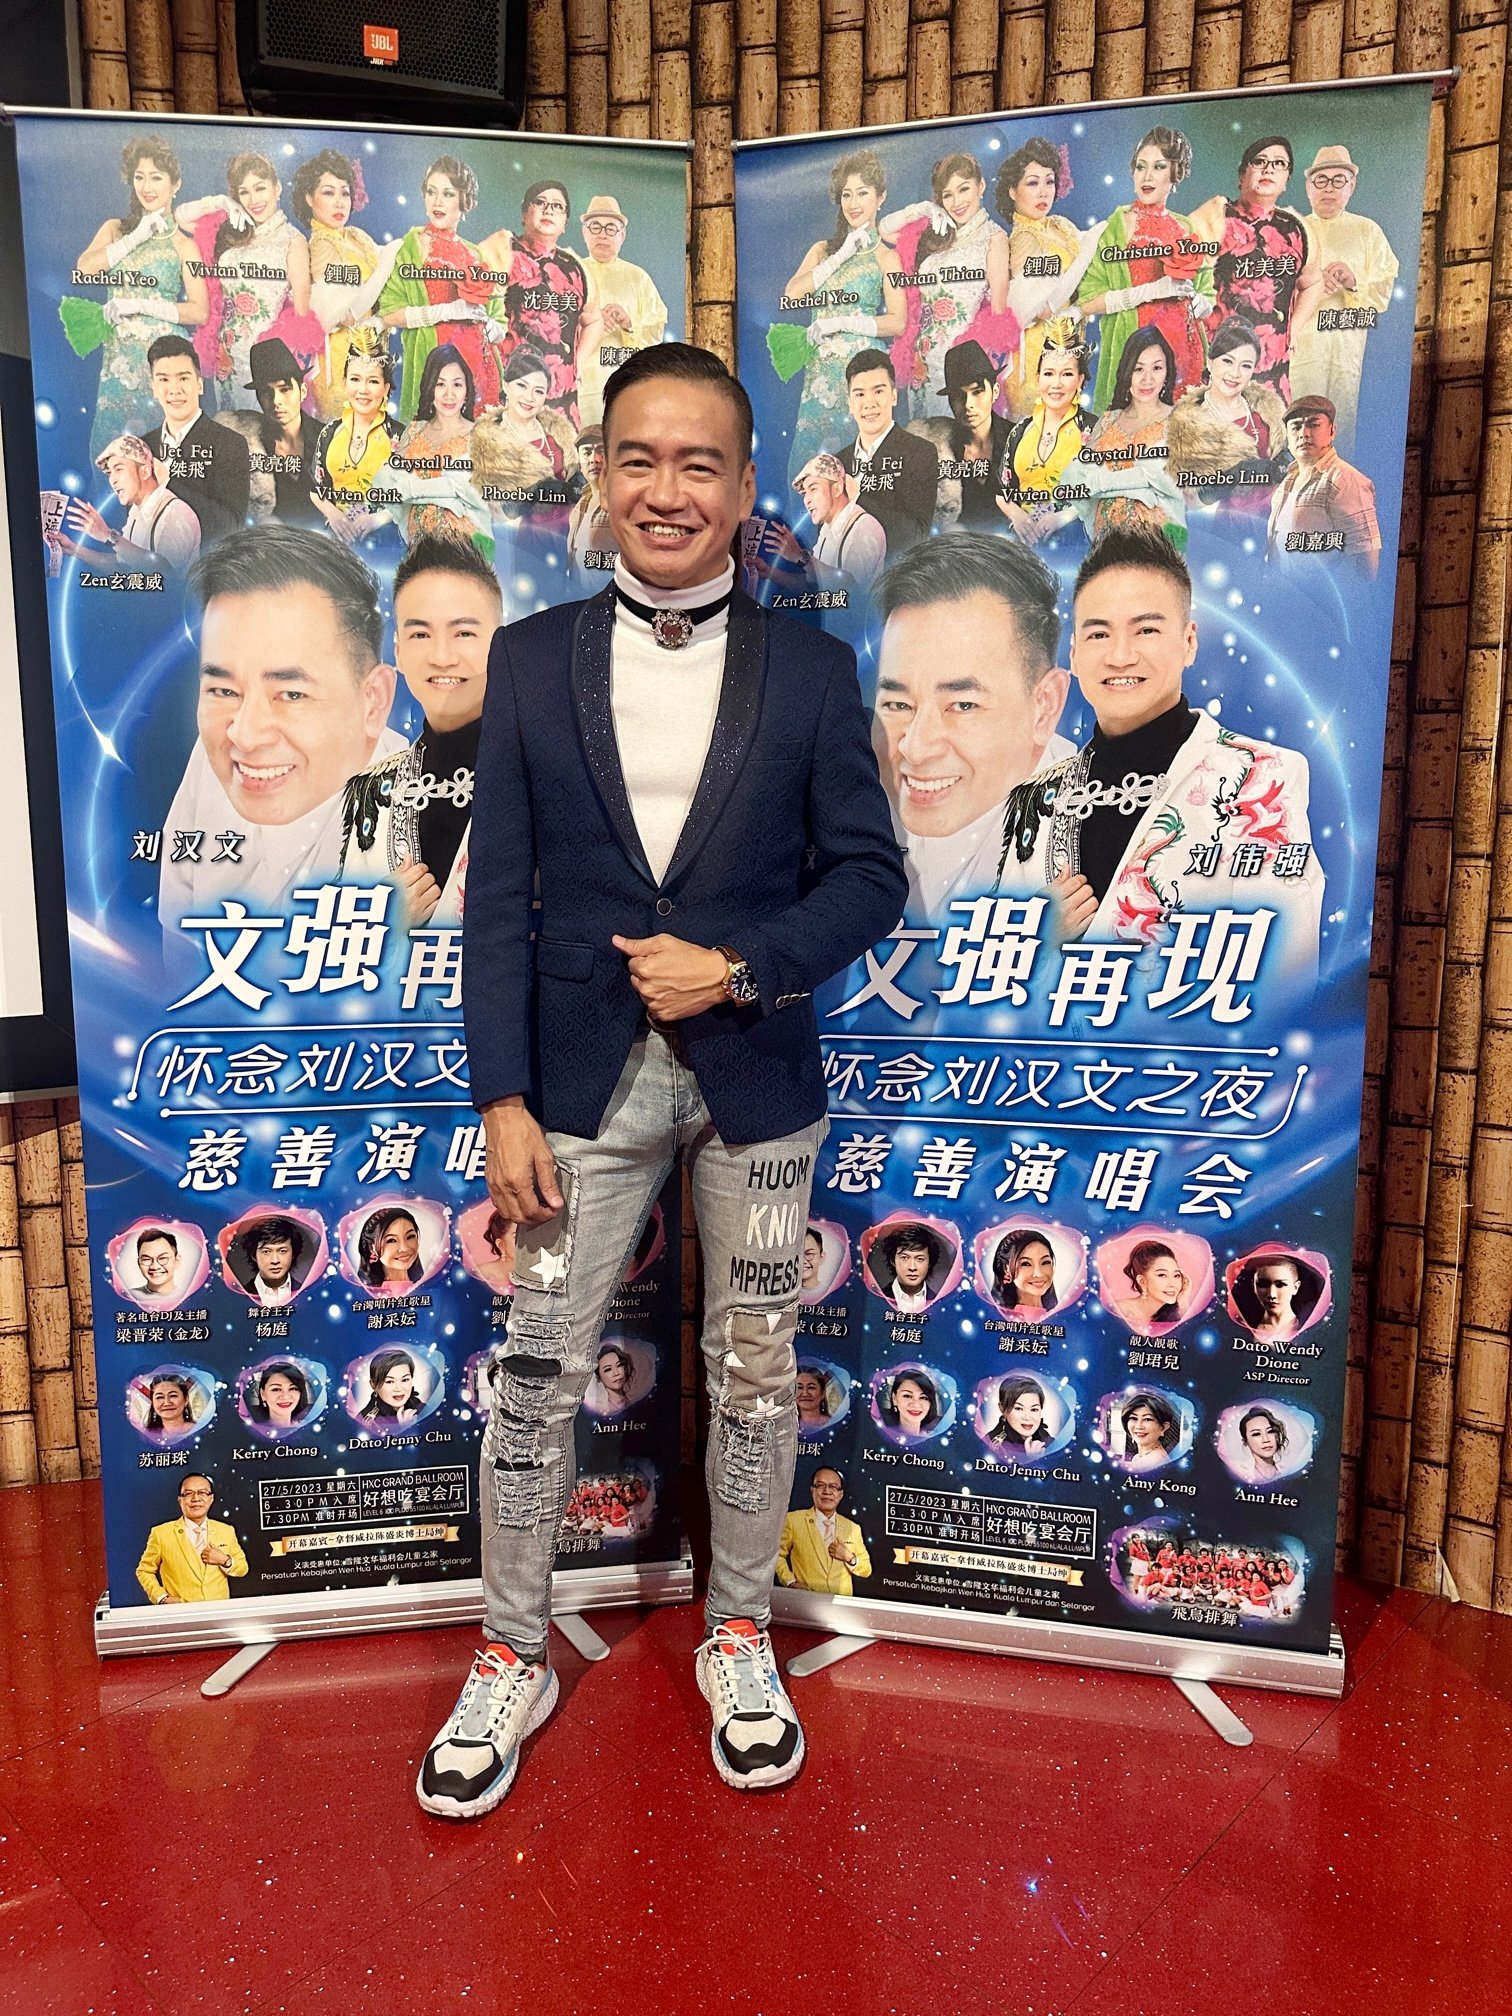 刘伟强为完成堂兄弟刘汉文遗愿举办慈善演唱会。